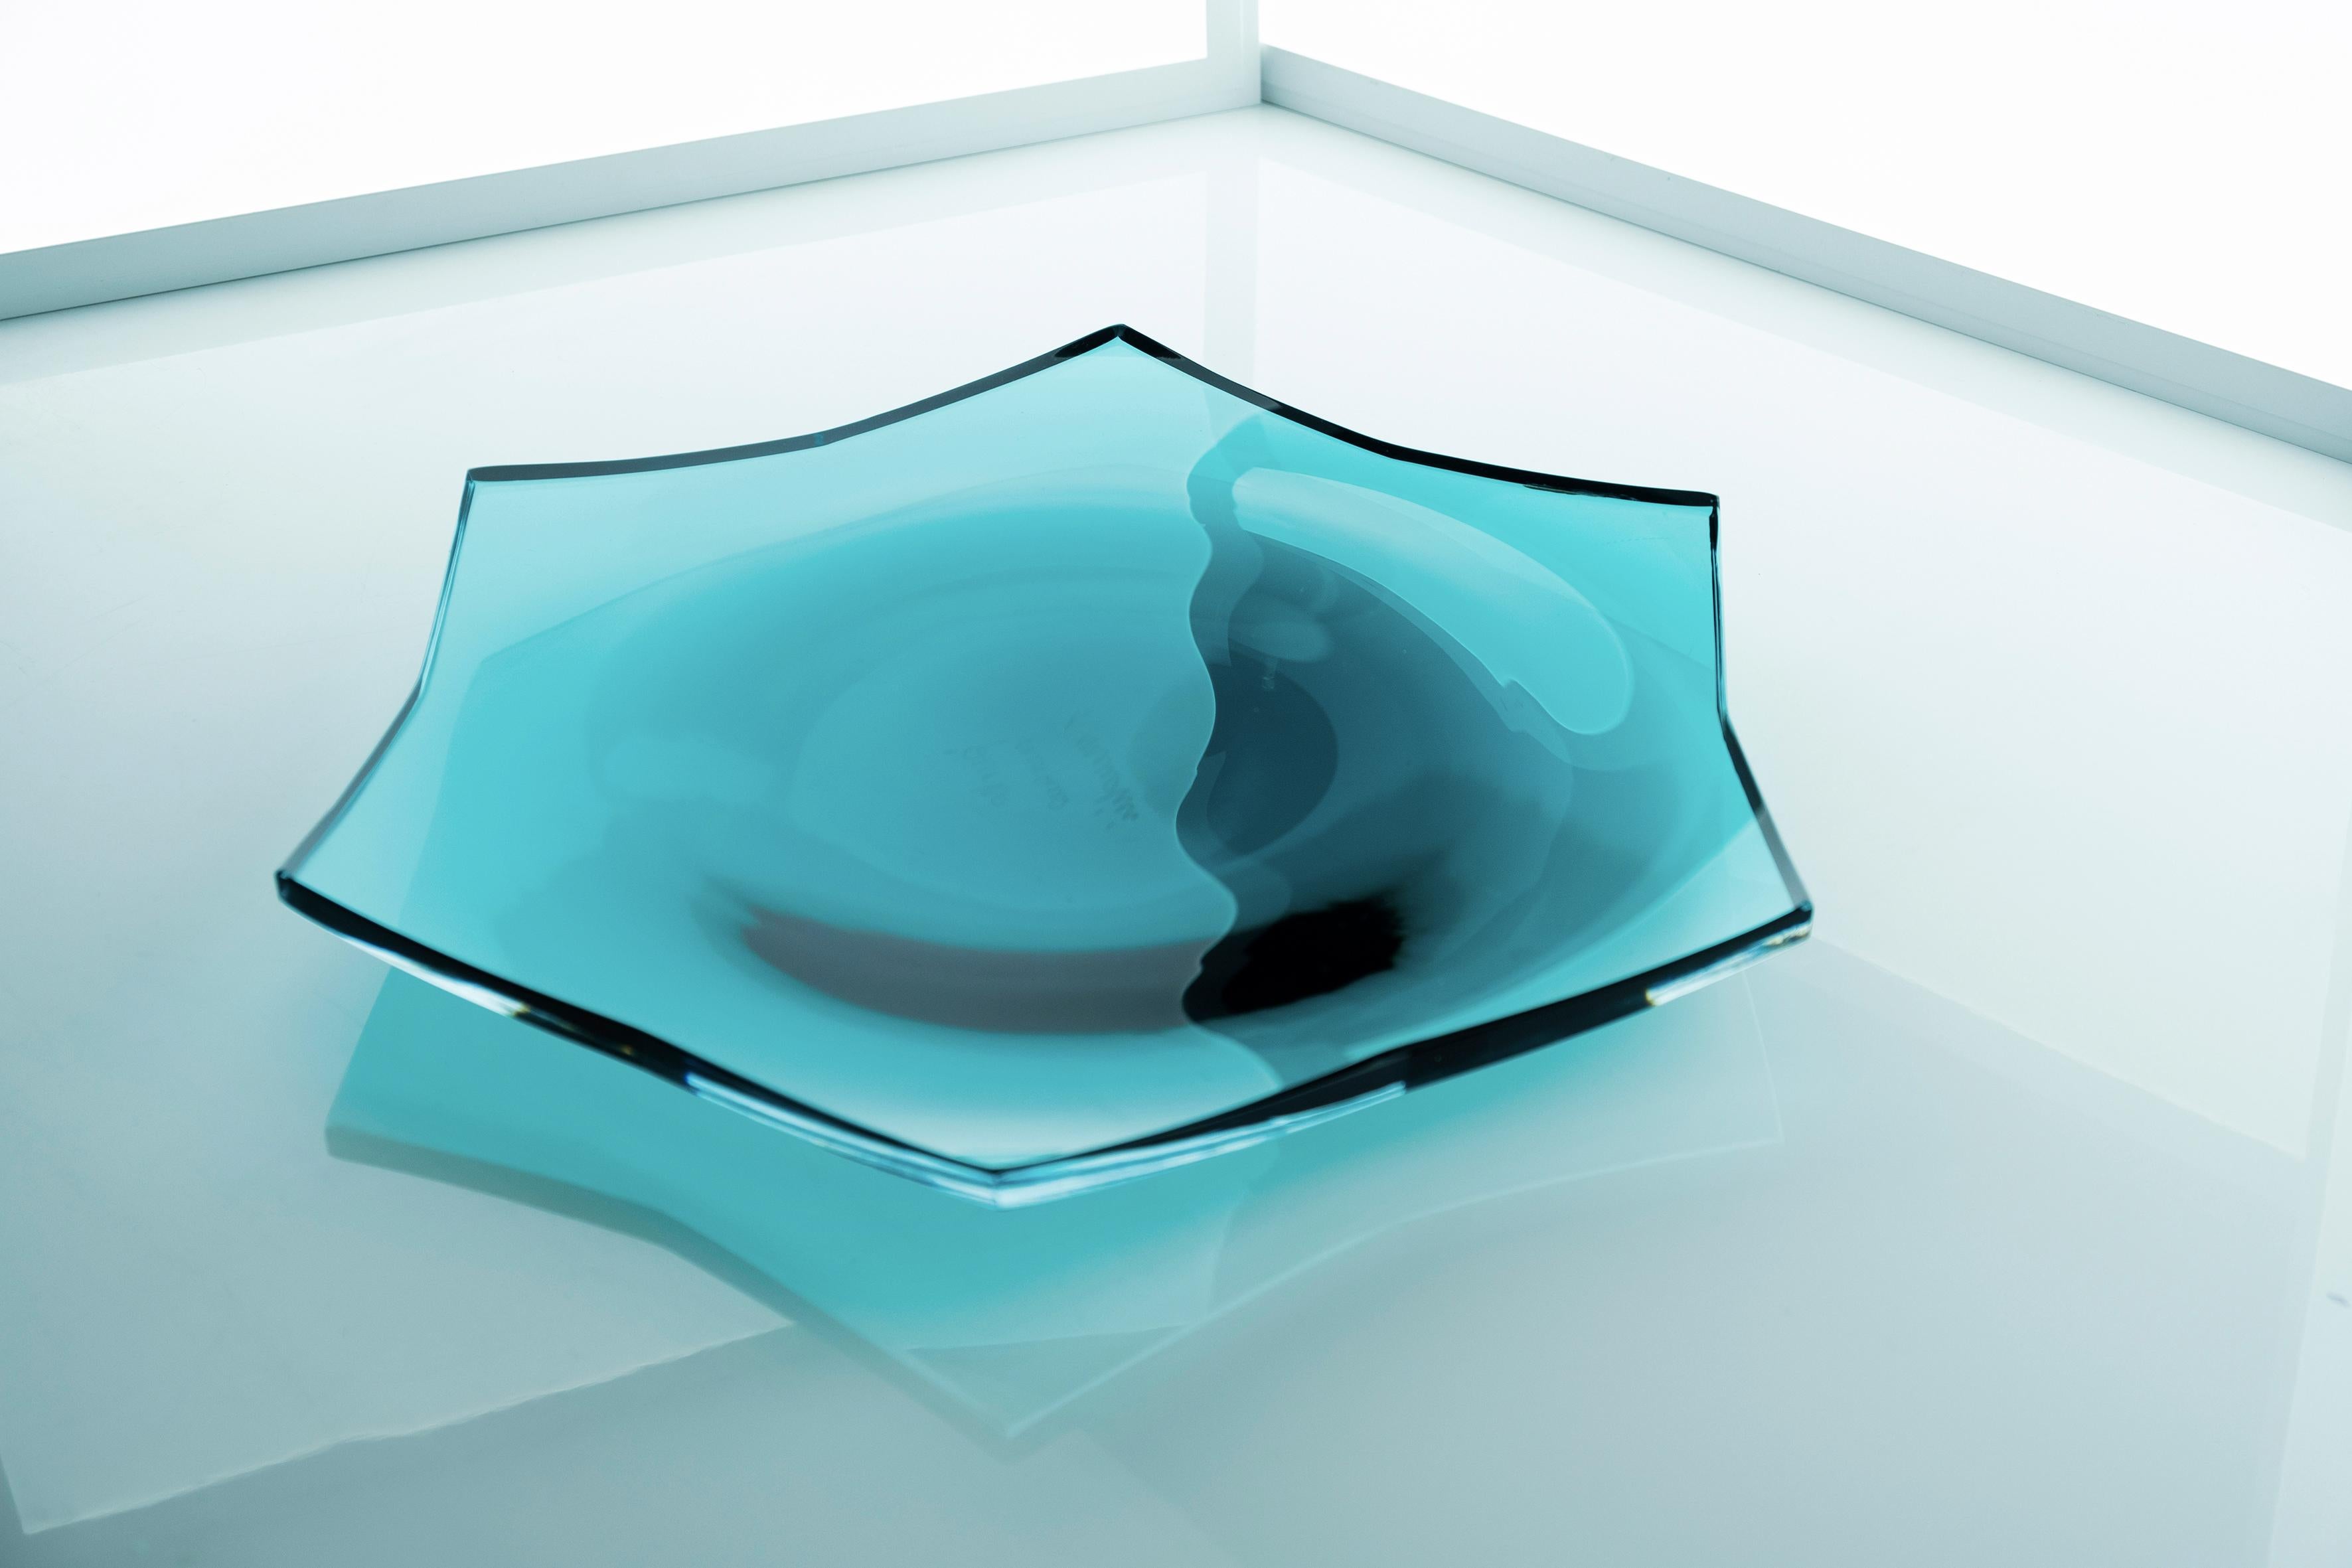 Stella Tablett von Purho
Abmessungen: T40 x H2.3 cm
MATERIALIEN: Glas
Andere Farben und Abmessungen sind möglich.

Purho ist ein neuer Protagonist des Made-in-Italy-Designs, ein Werk der Synthese, eine jahrelange Forschung, eine italienische Seele